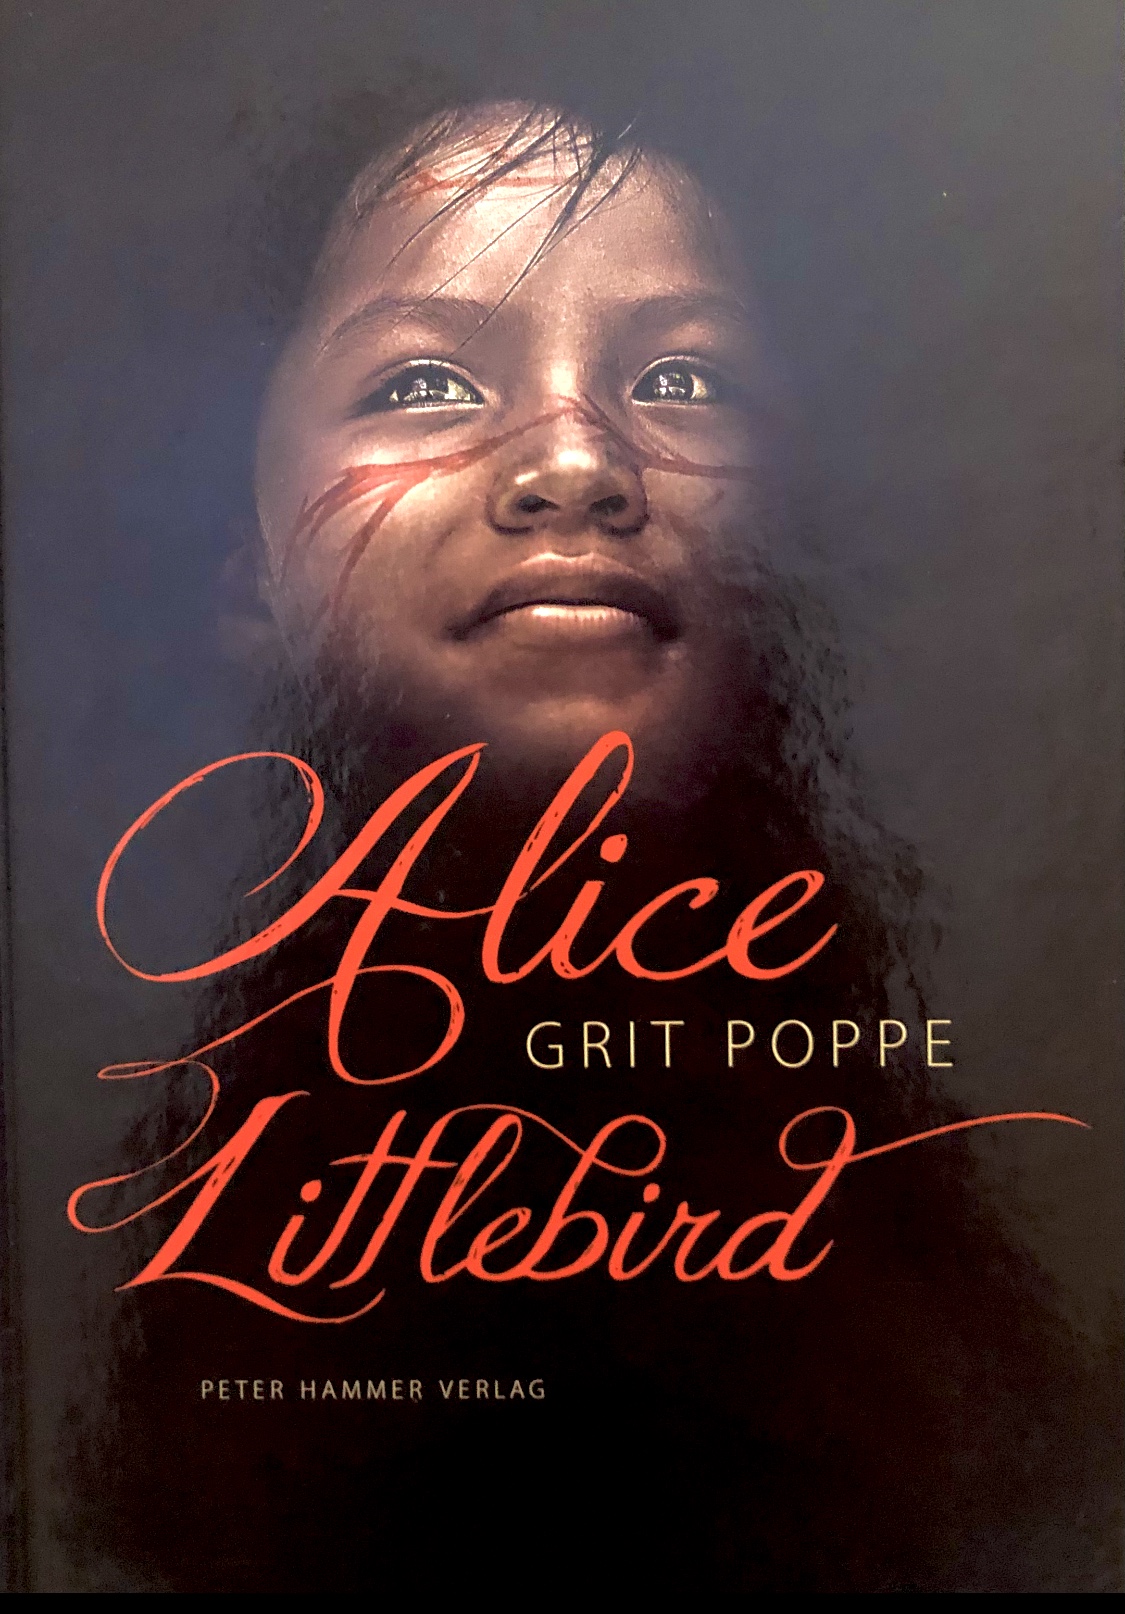 Die neunjährige Alice Littlebird aus dem Volk der Cree wagt die Flucht in die Freiheit.